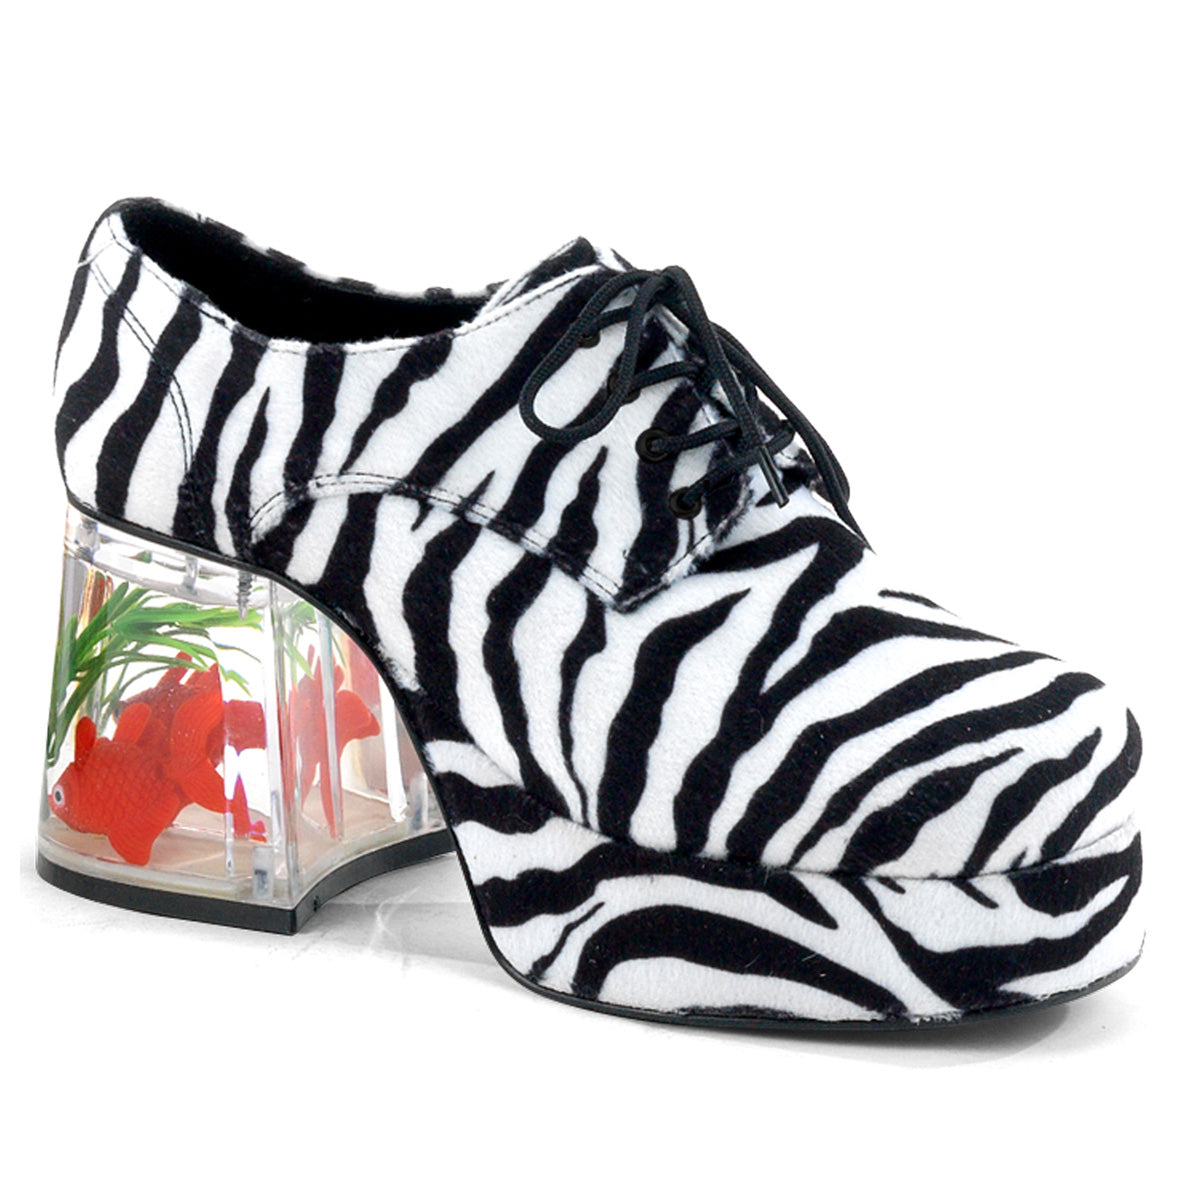 PIMP-02 Zebra Floating Fish Men's Shoes